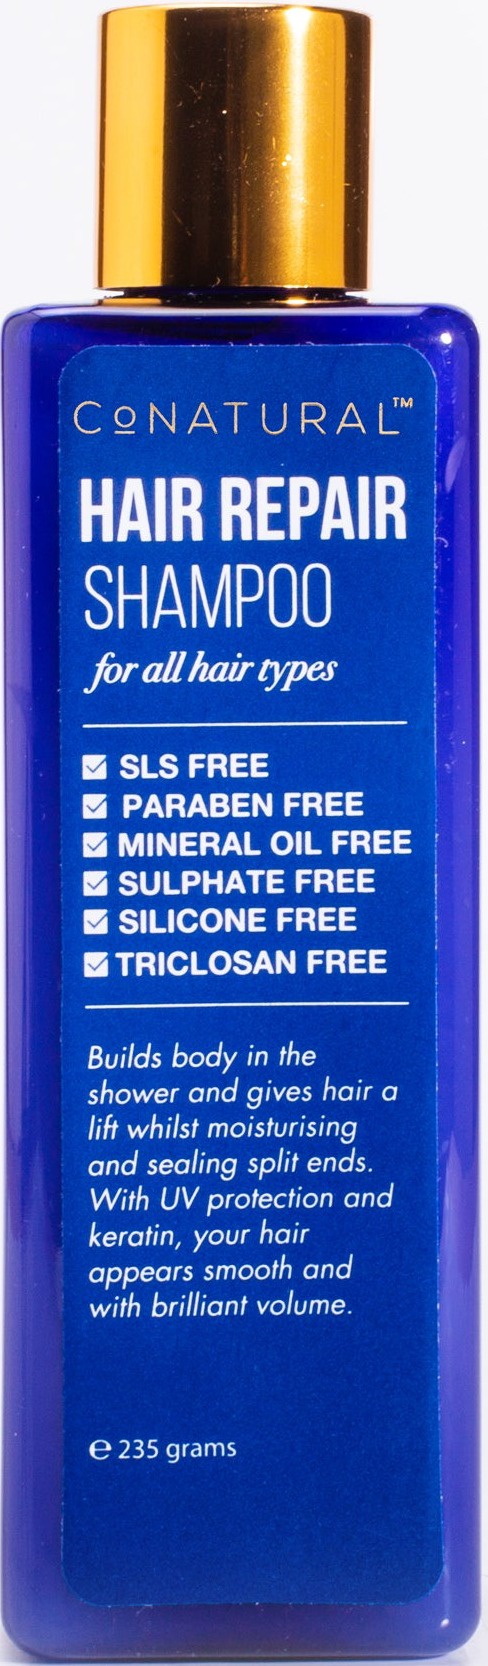 CoNatural Hair Repair Shampoo